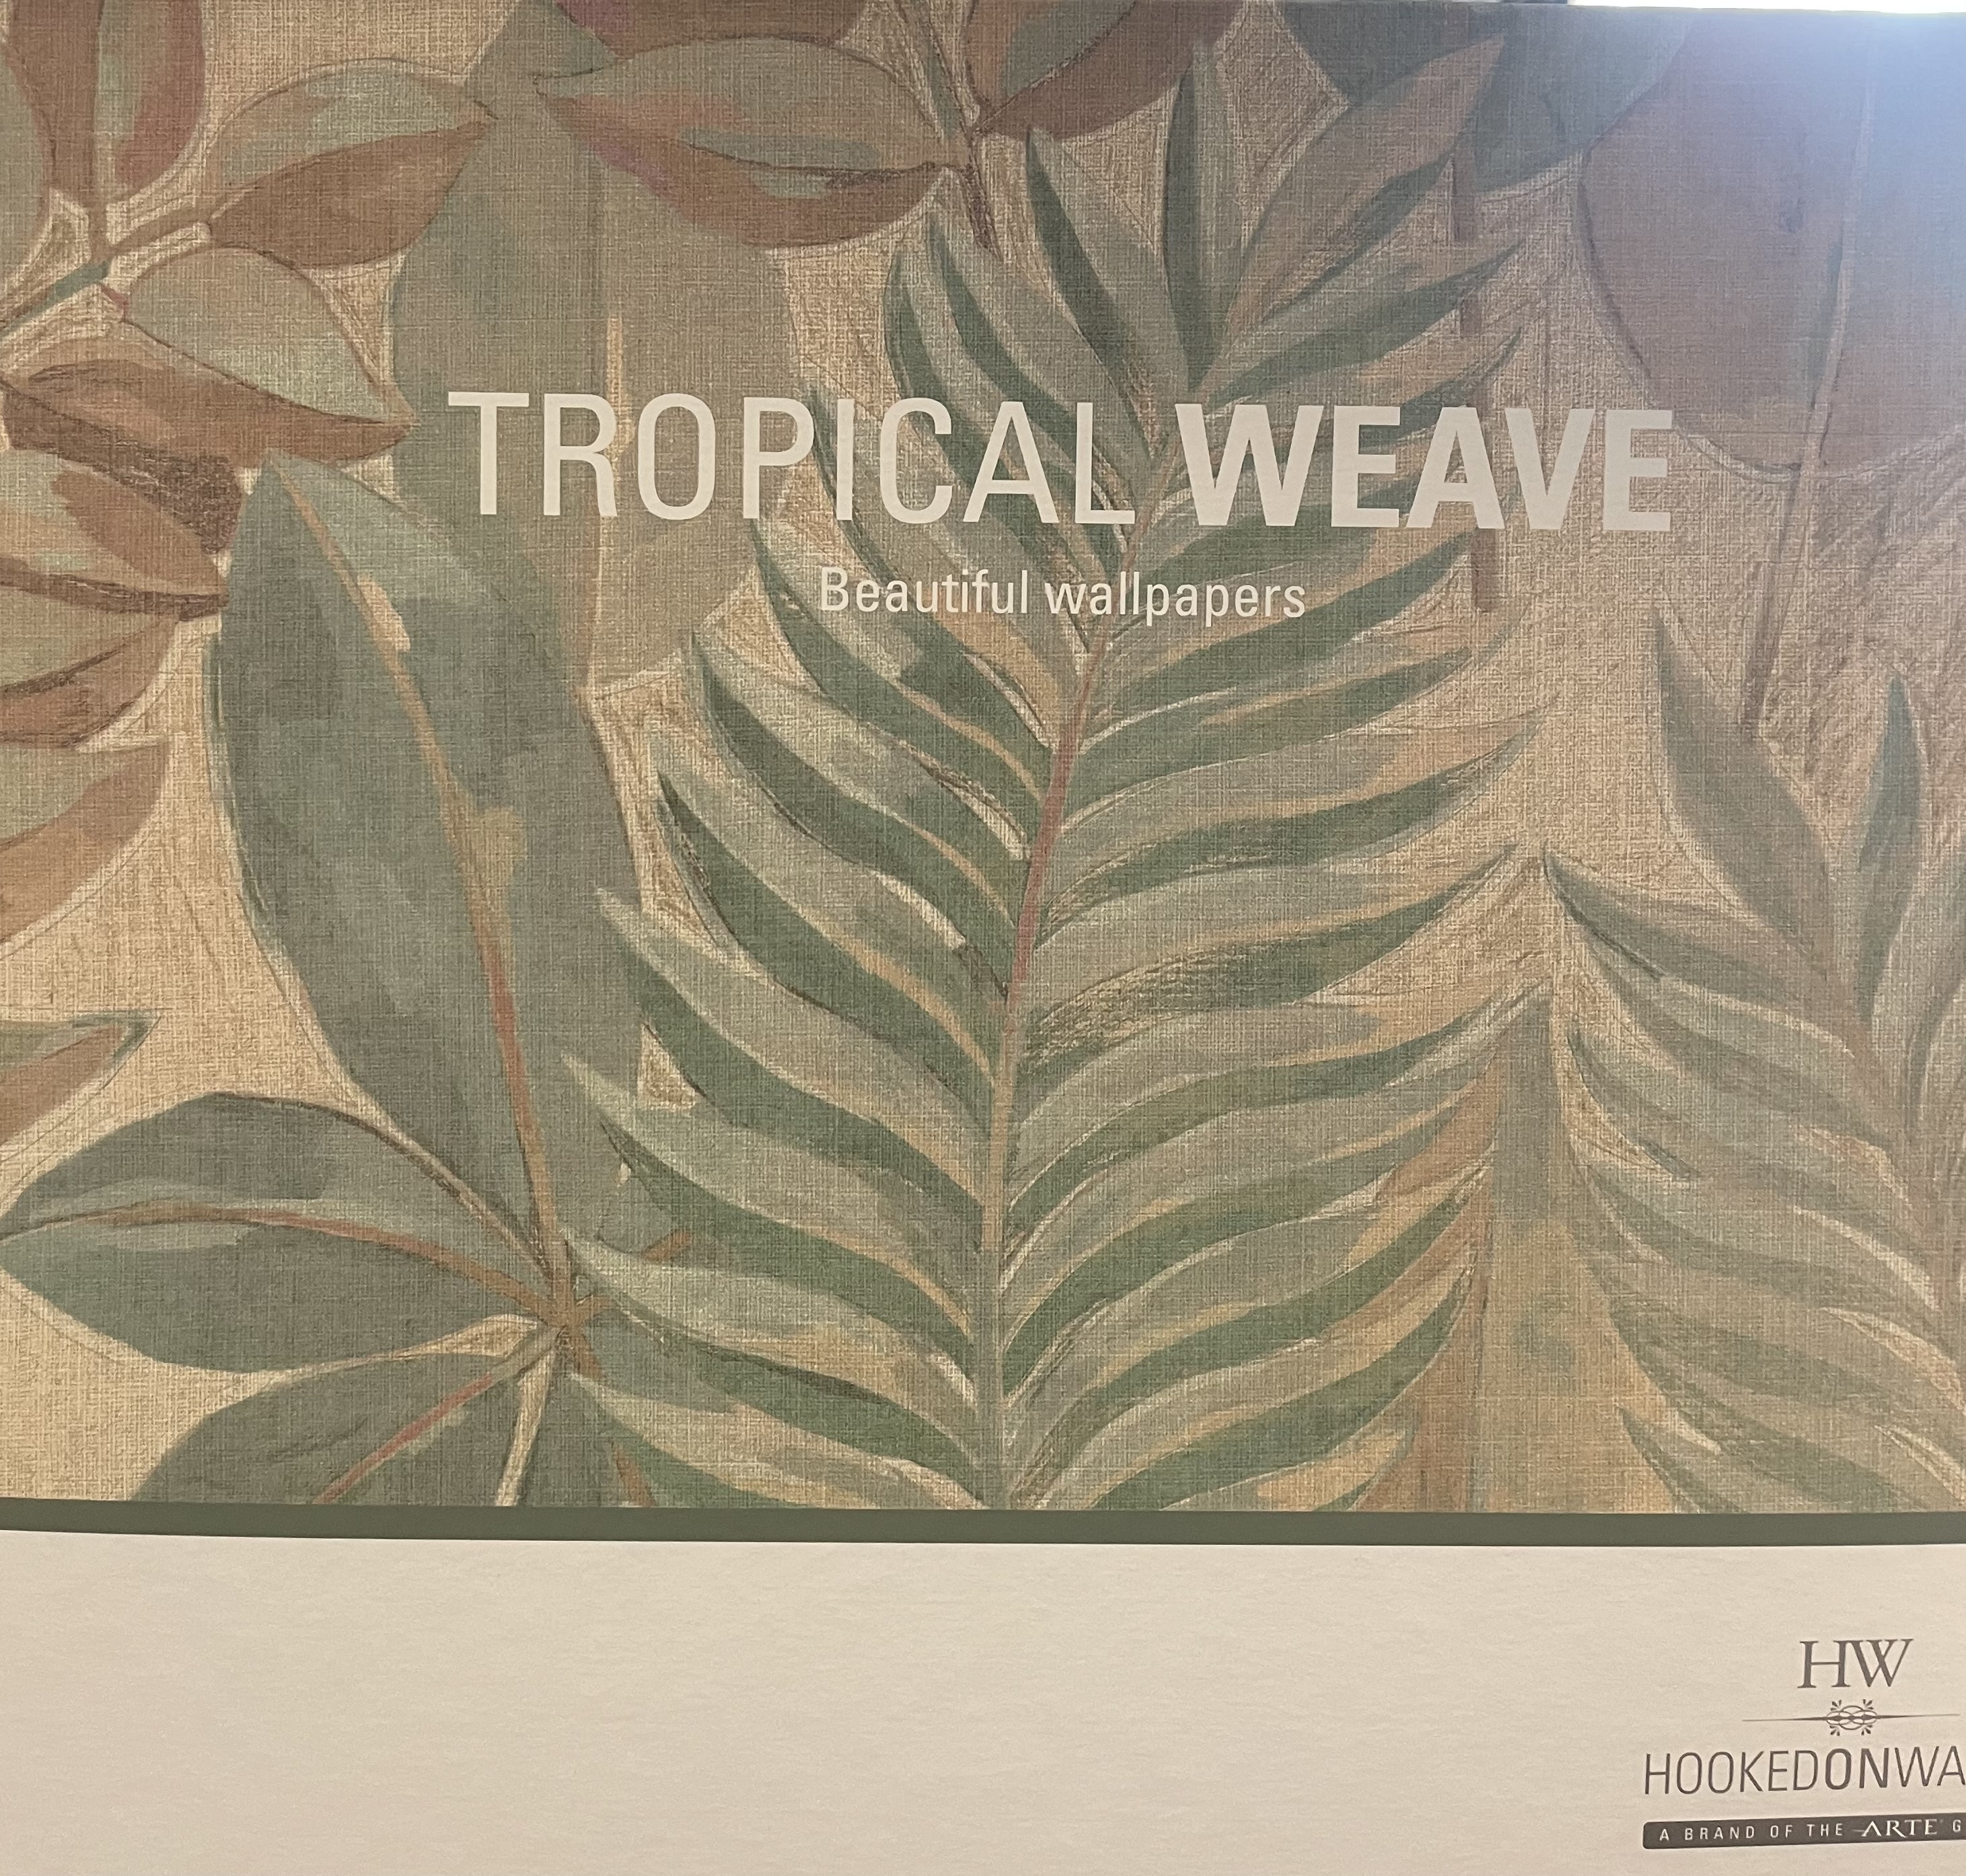 Abstract & Stilistisch - Tropical Weave